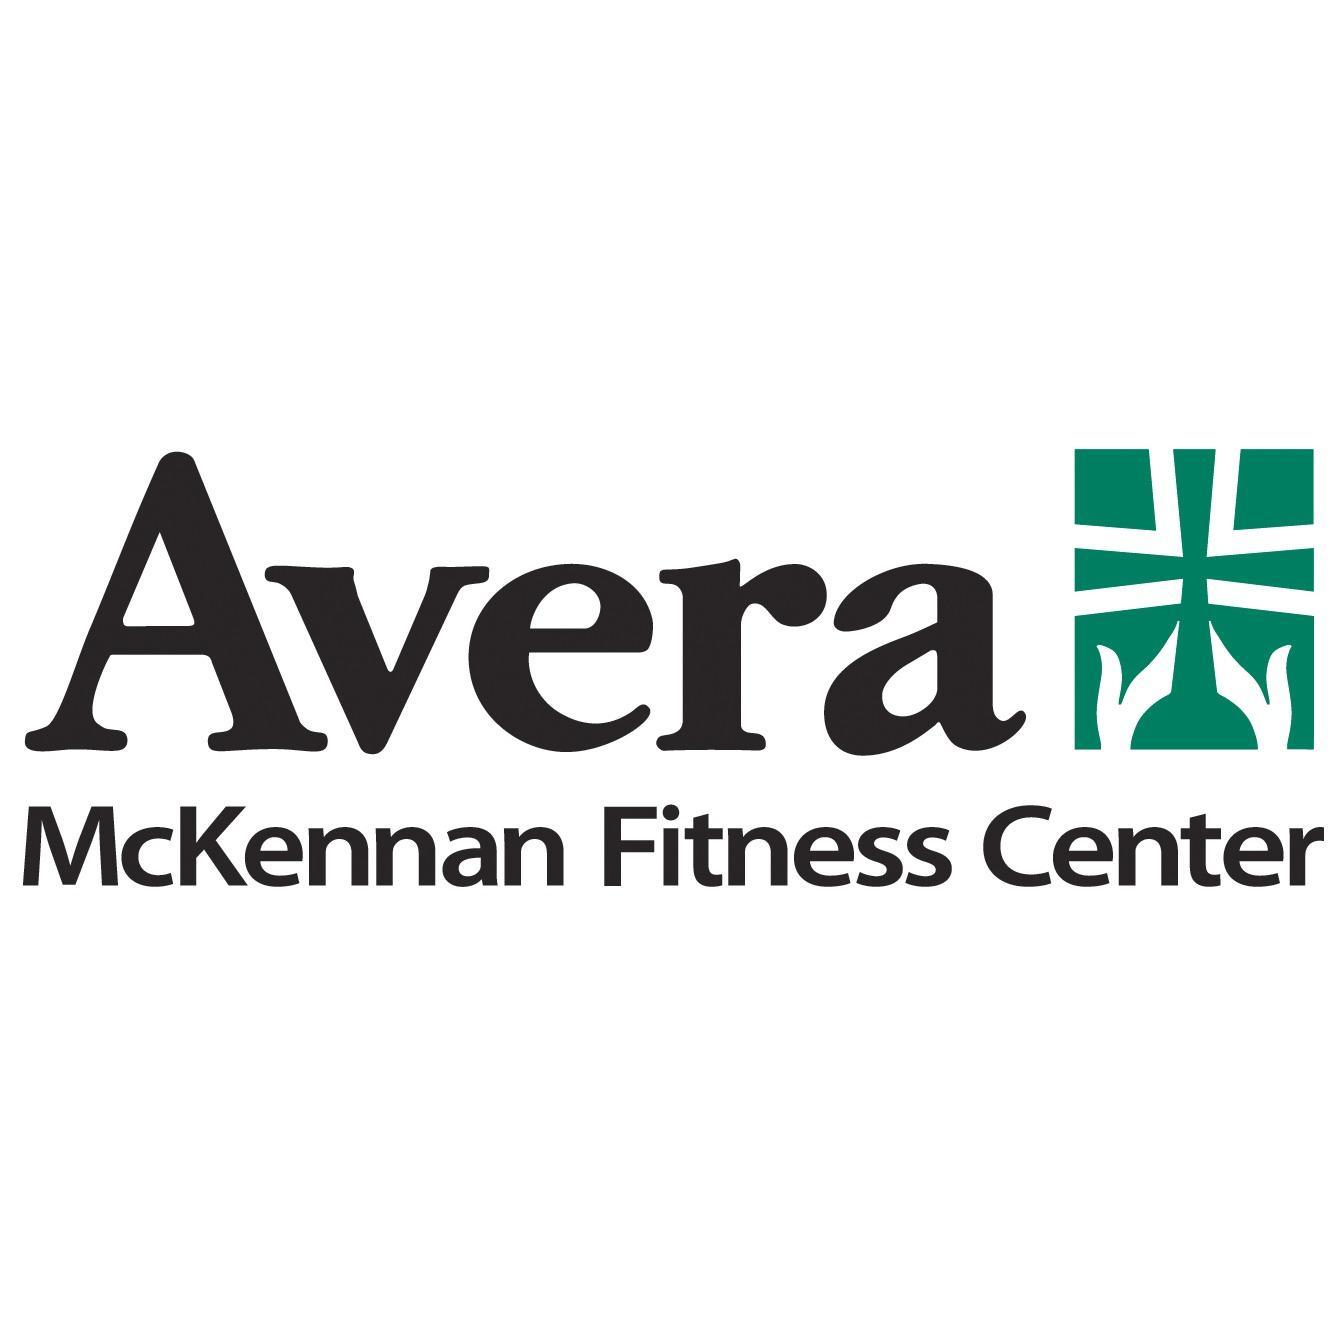 Avera McKennan Fitness Center Sioux Falls (605)322-5300